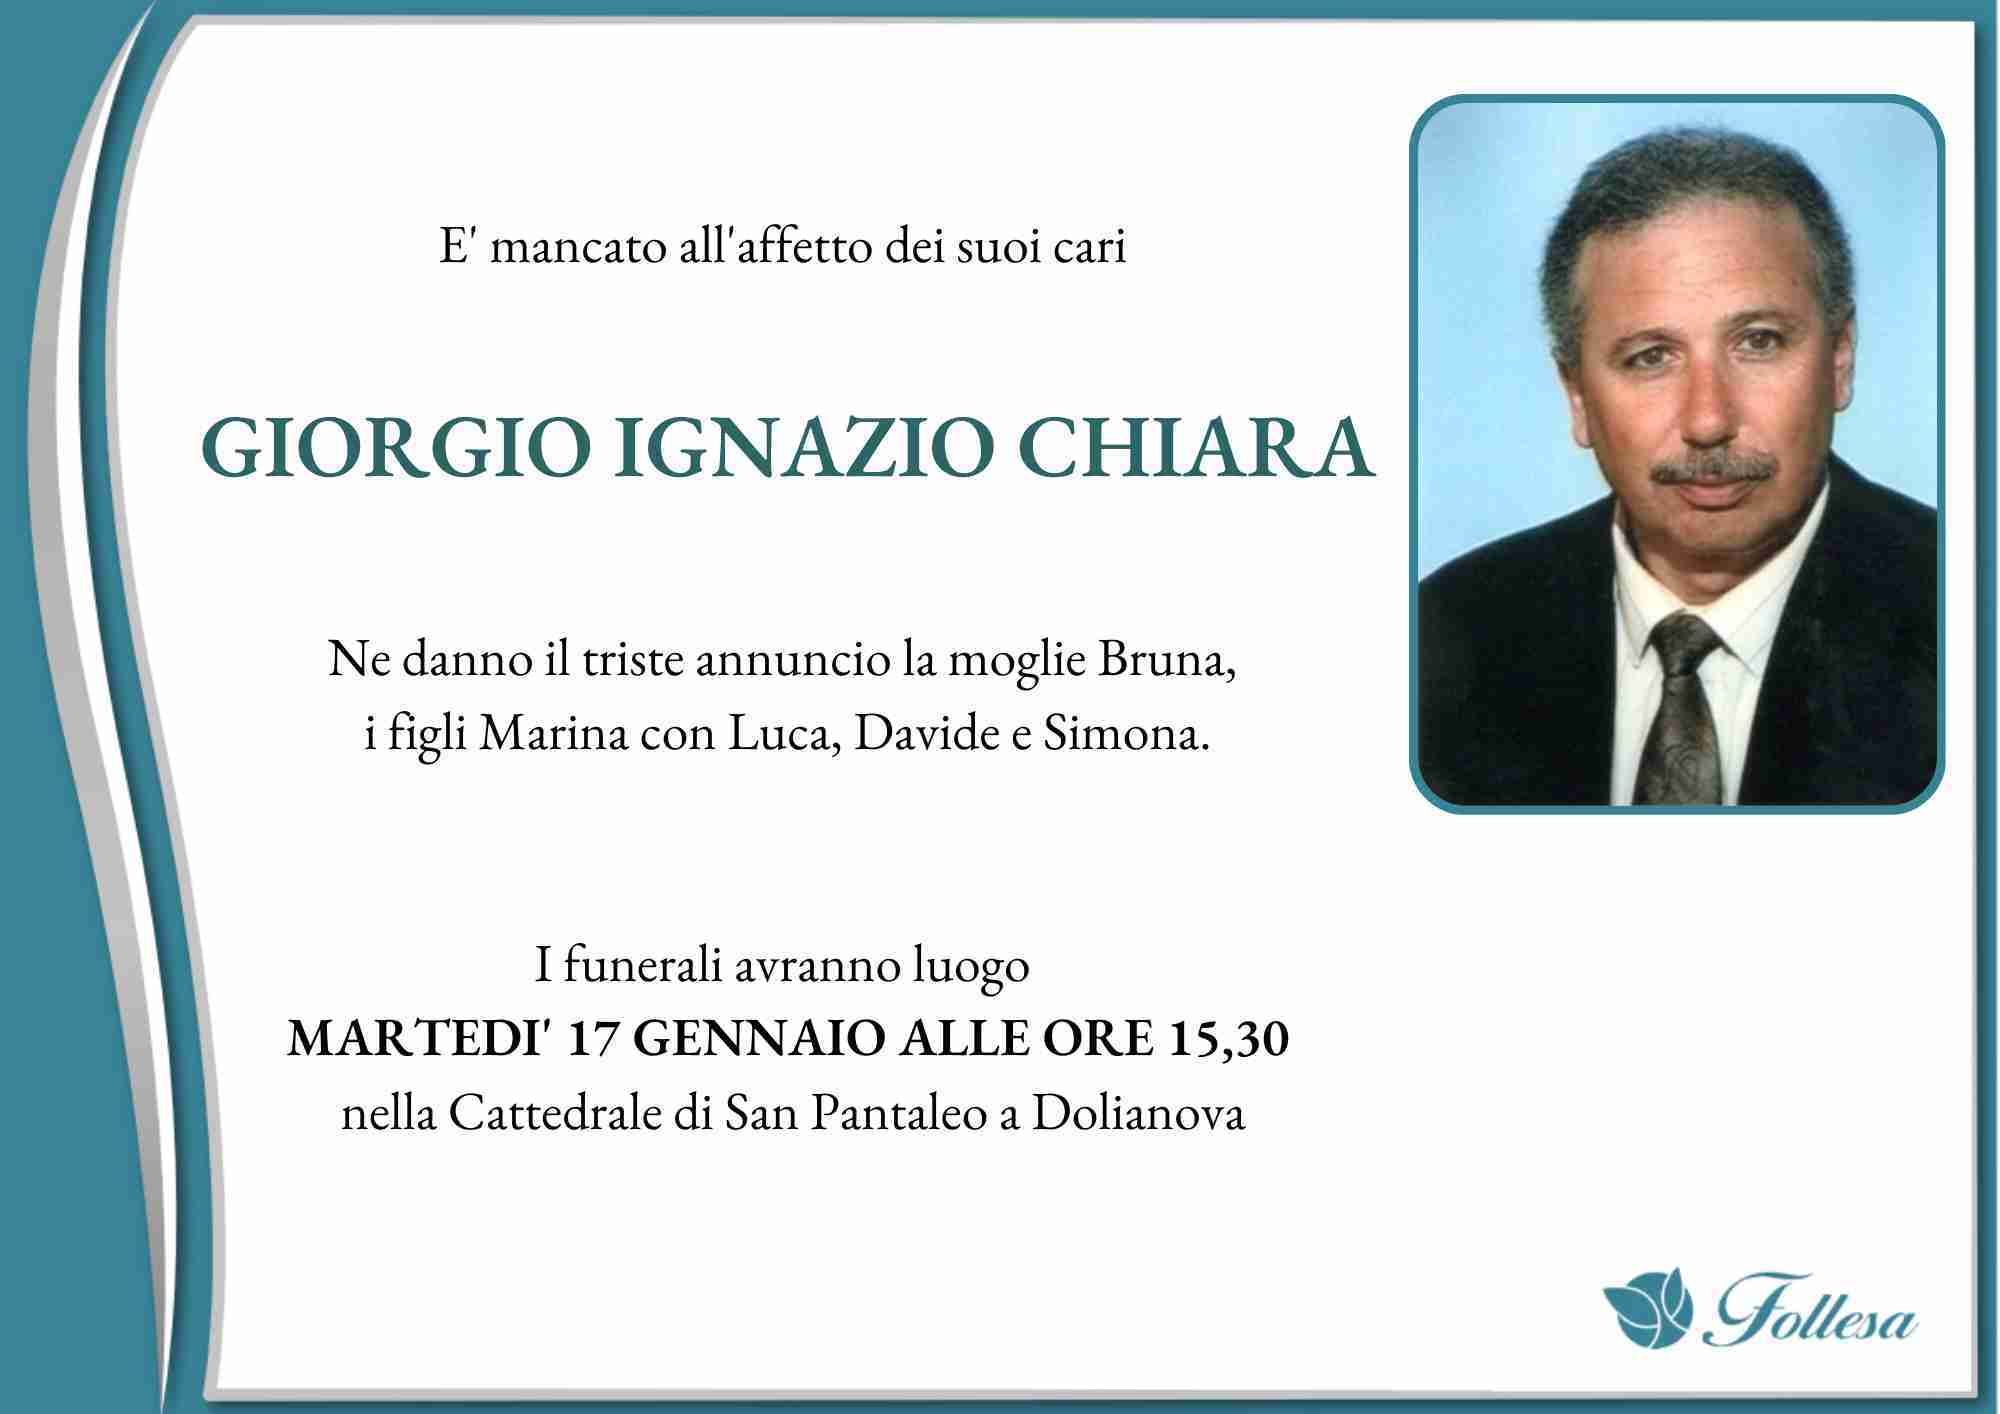 Giorgio Ignazio Chiara